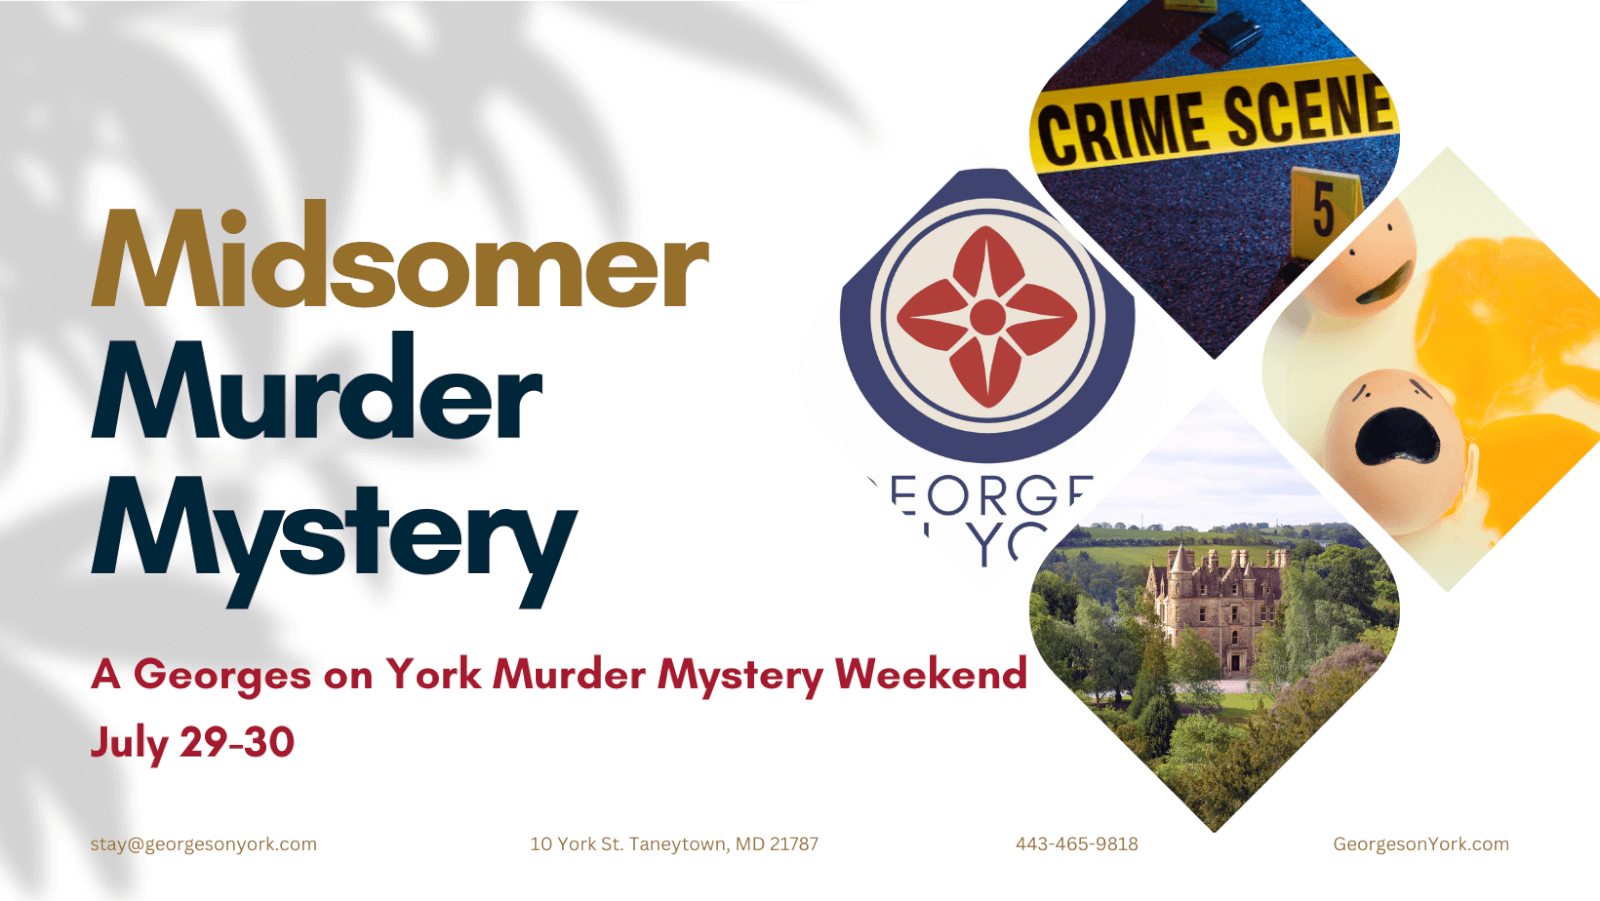 Midsomer Murder Mystery Weekend